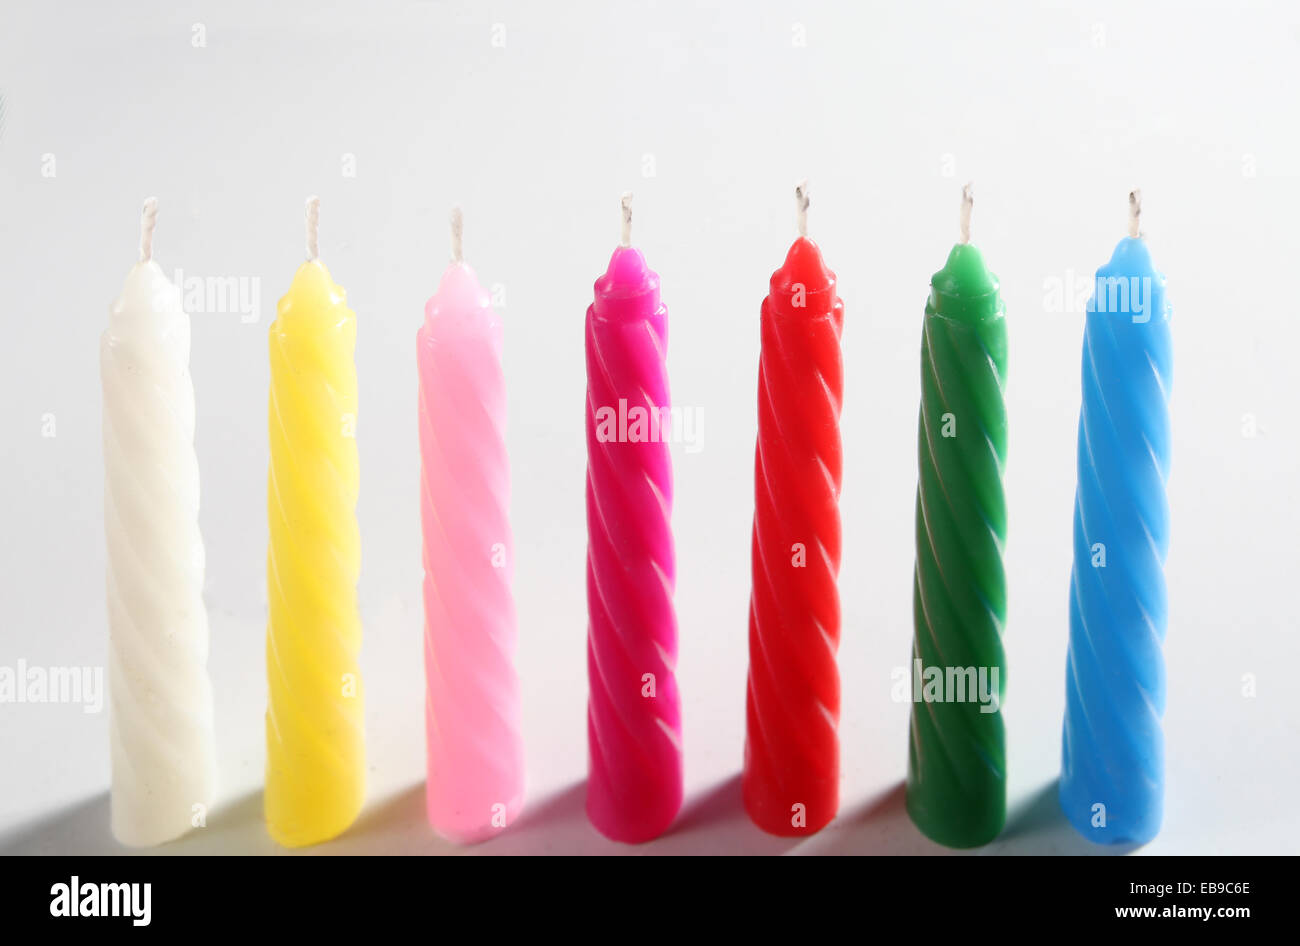 Sept bougies colorés sur fond blanc Banque D'Images